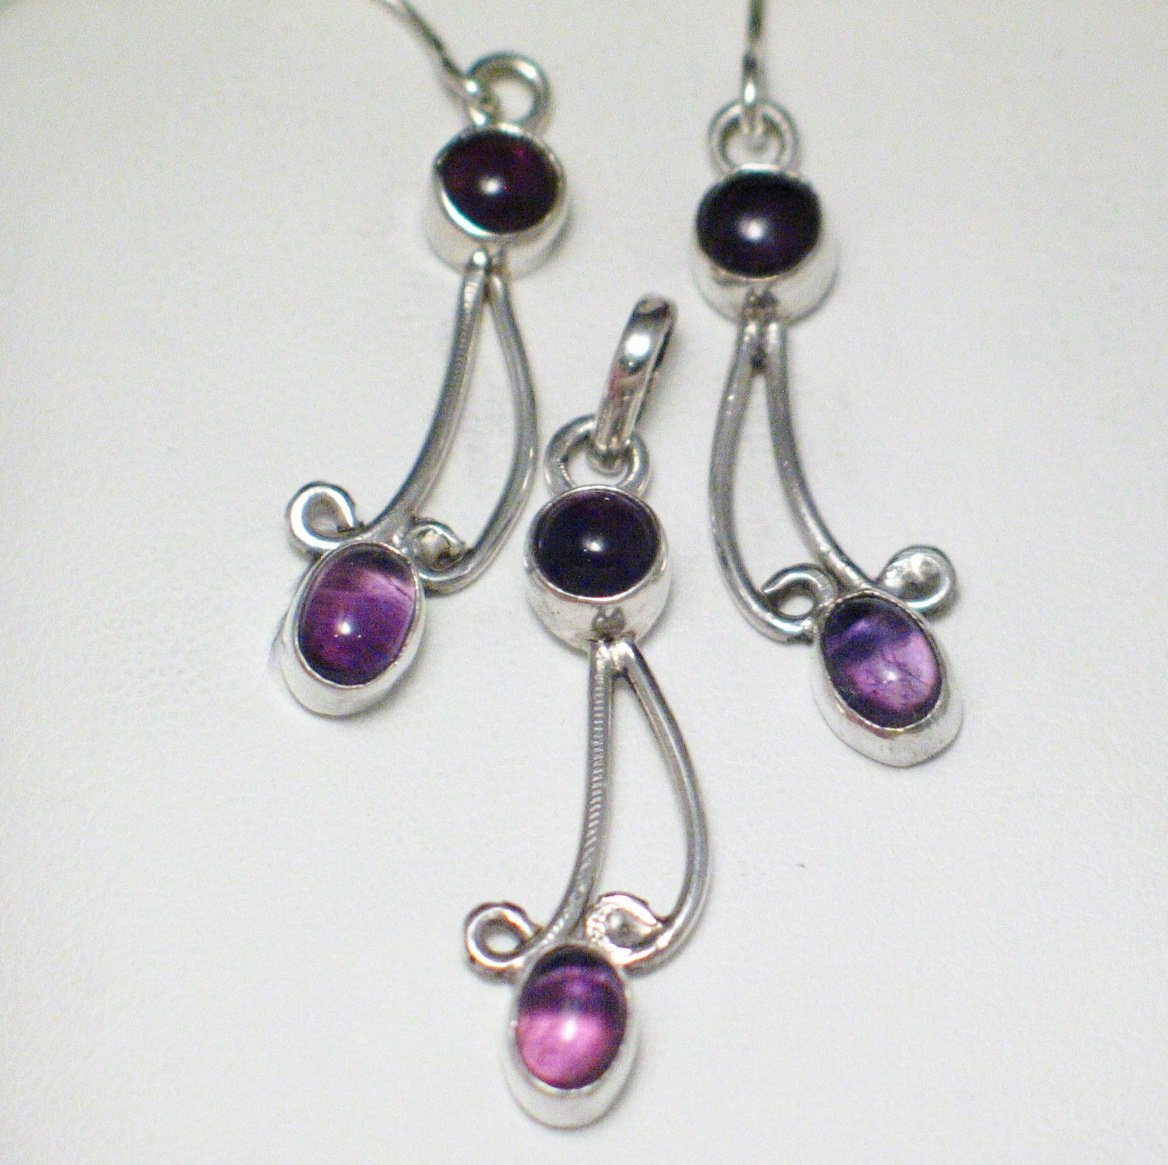 Earrings & Pendant set | Sterling Silver Purple Amethyst Stone Matching Earrings Pendant | Womens Jewelry online at www.Blingschlingers.com